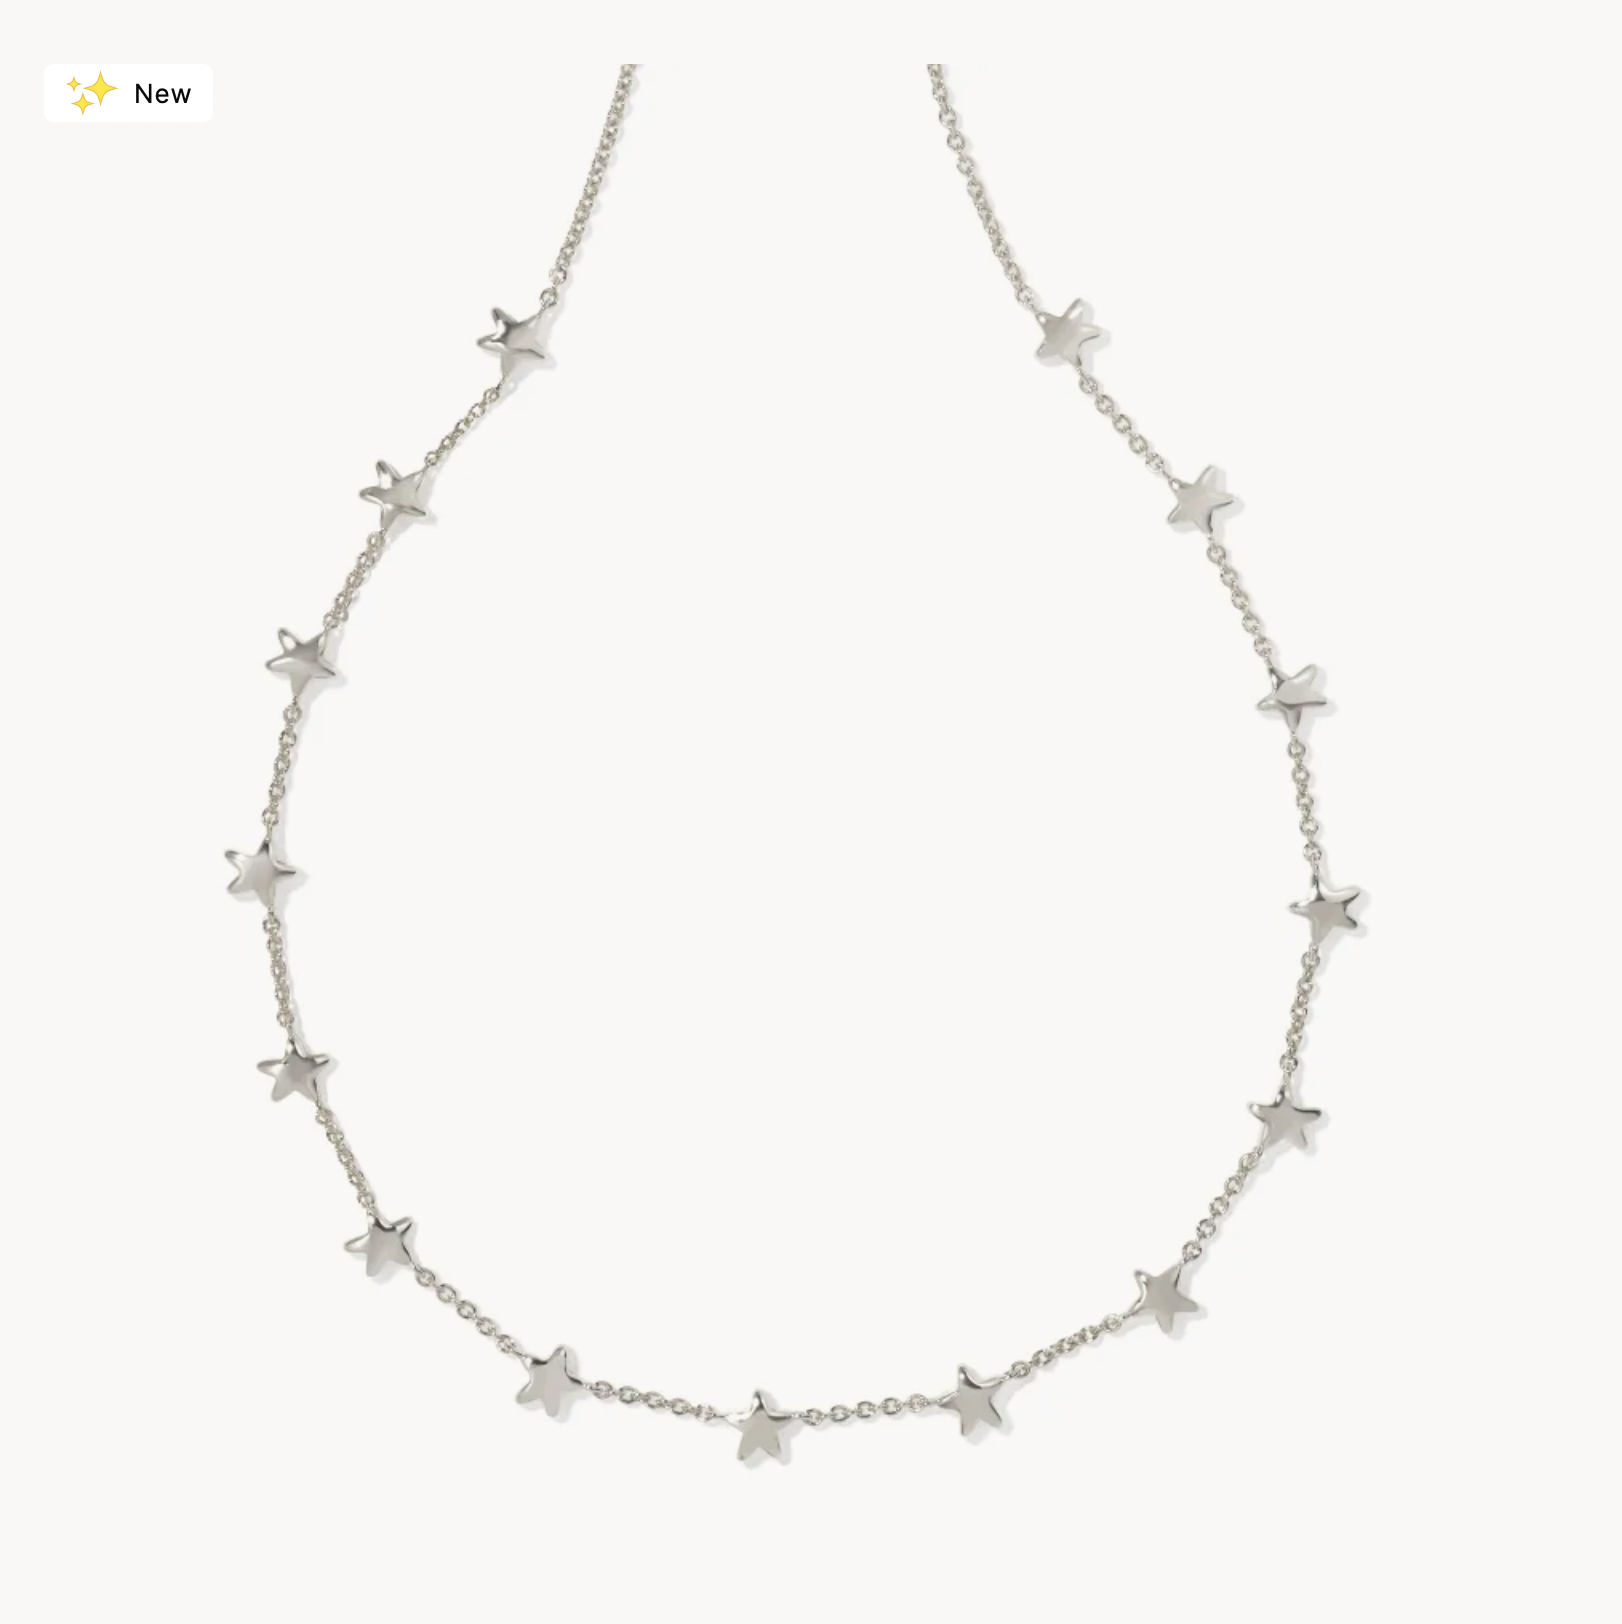 Sierra Star Gold Chain Necklace